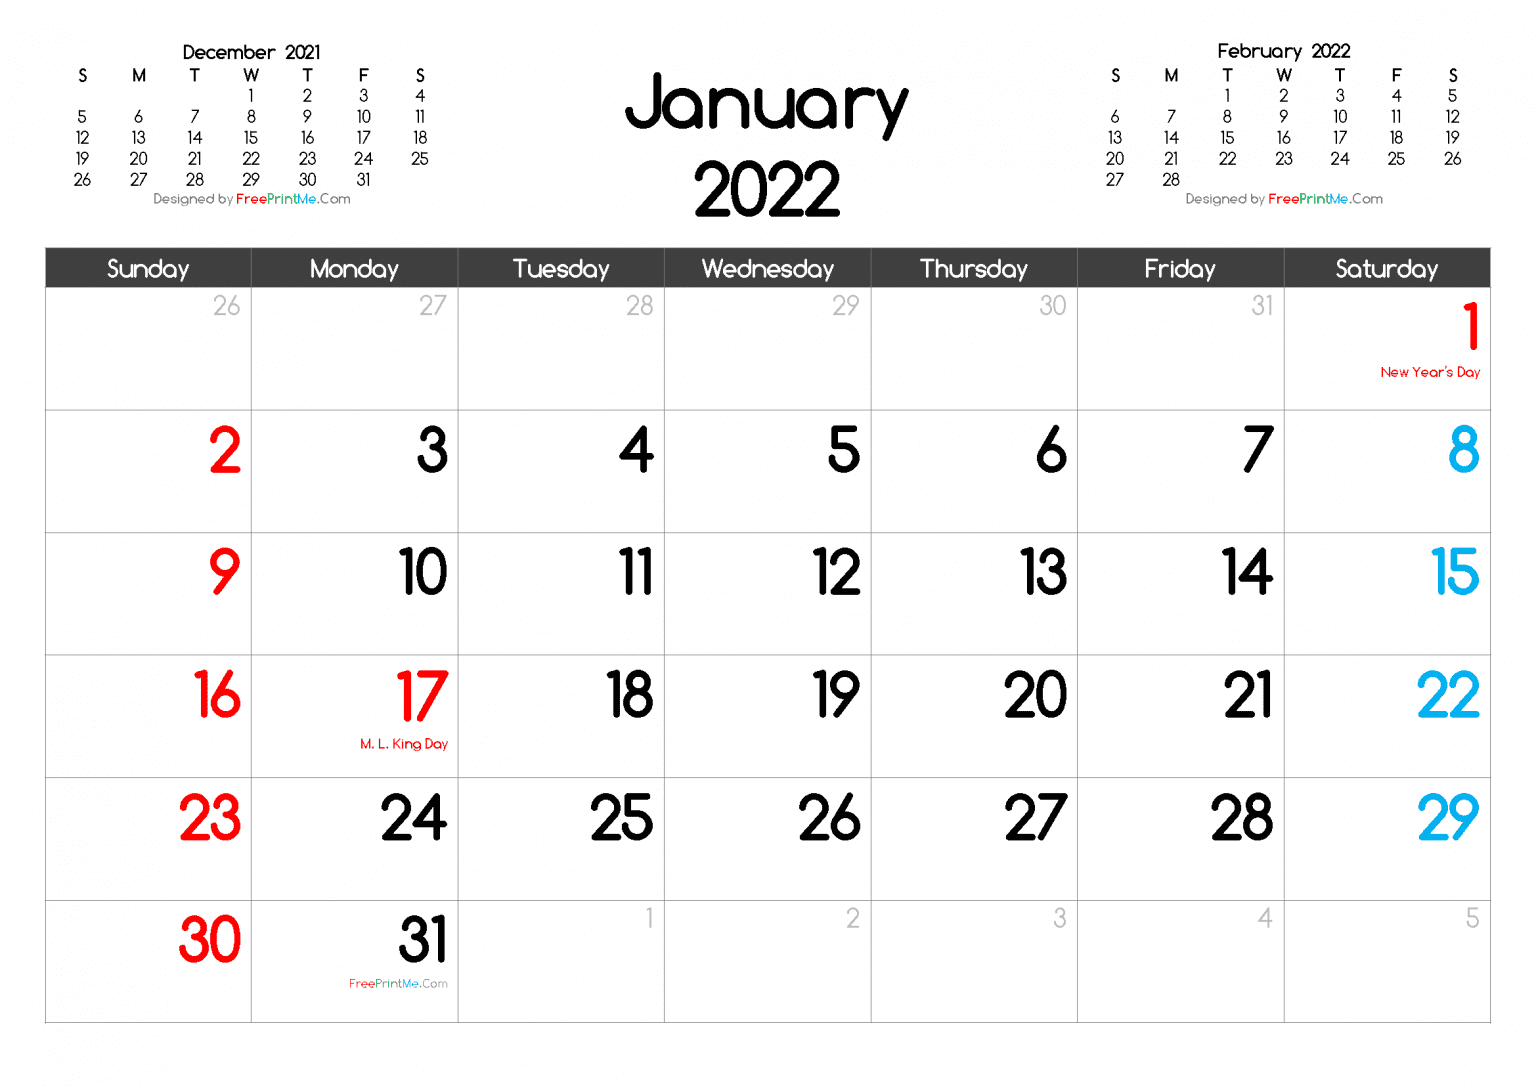 January 2022 Calendar Template Customize And Print